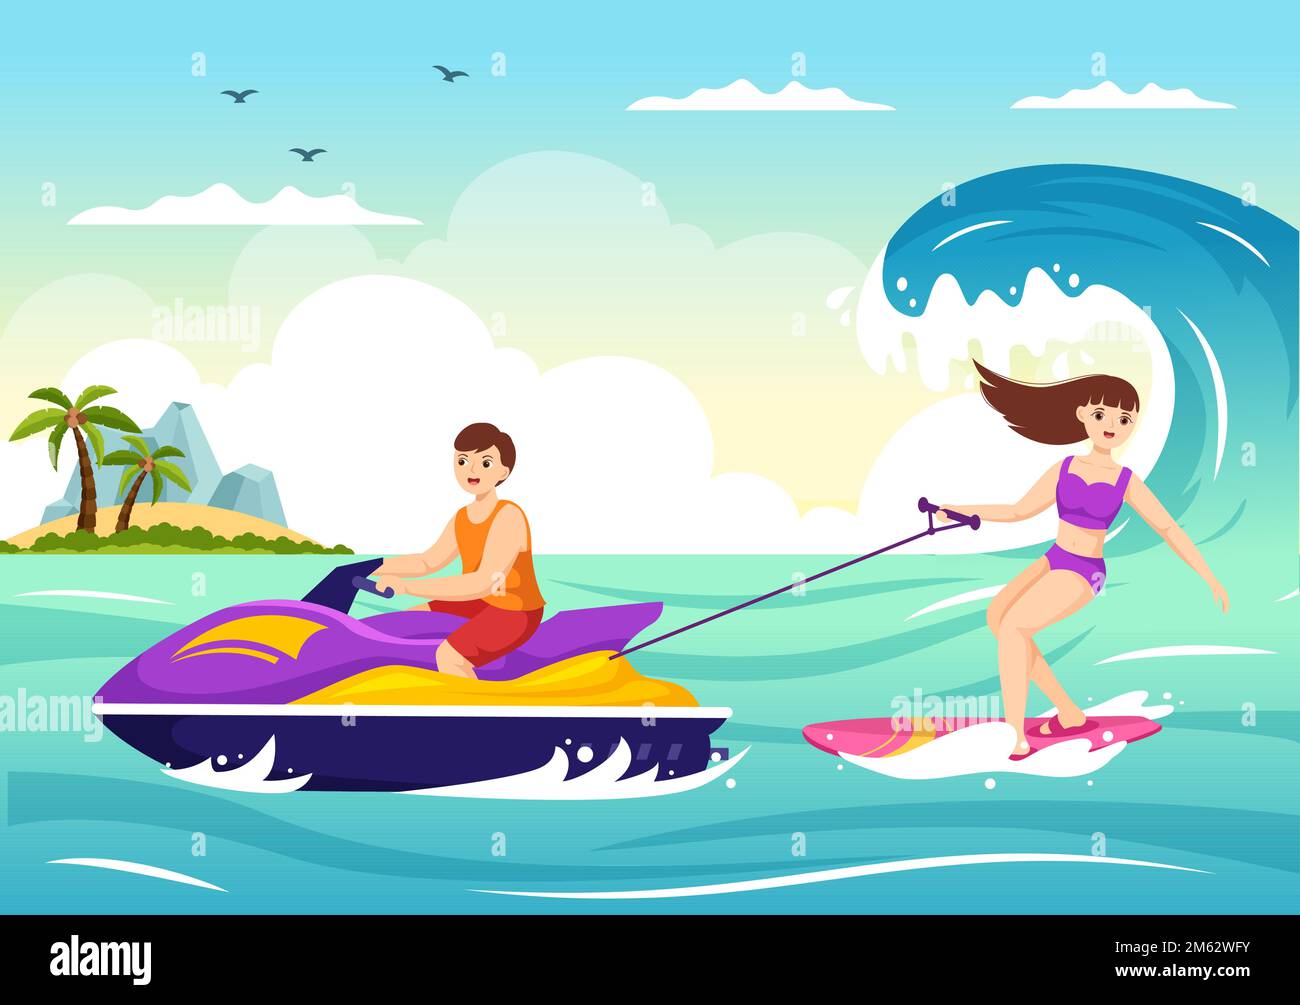 Les gens font du jet ski Illustration vacances d'été Loisirs, sports aquatiques extrêmes et activités de la plage de la station en dessin main modèle de dessin de dessin de dessin à plat Illustration de Vecteur